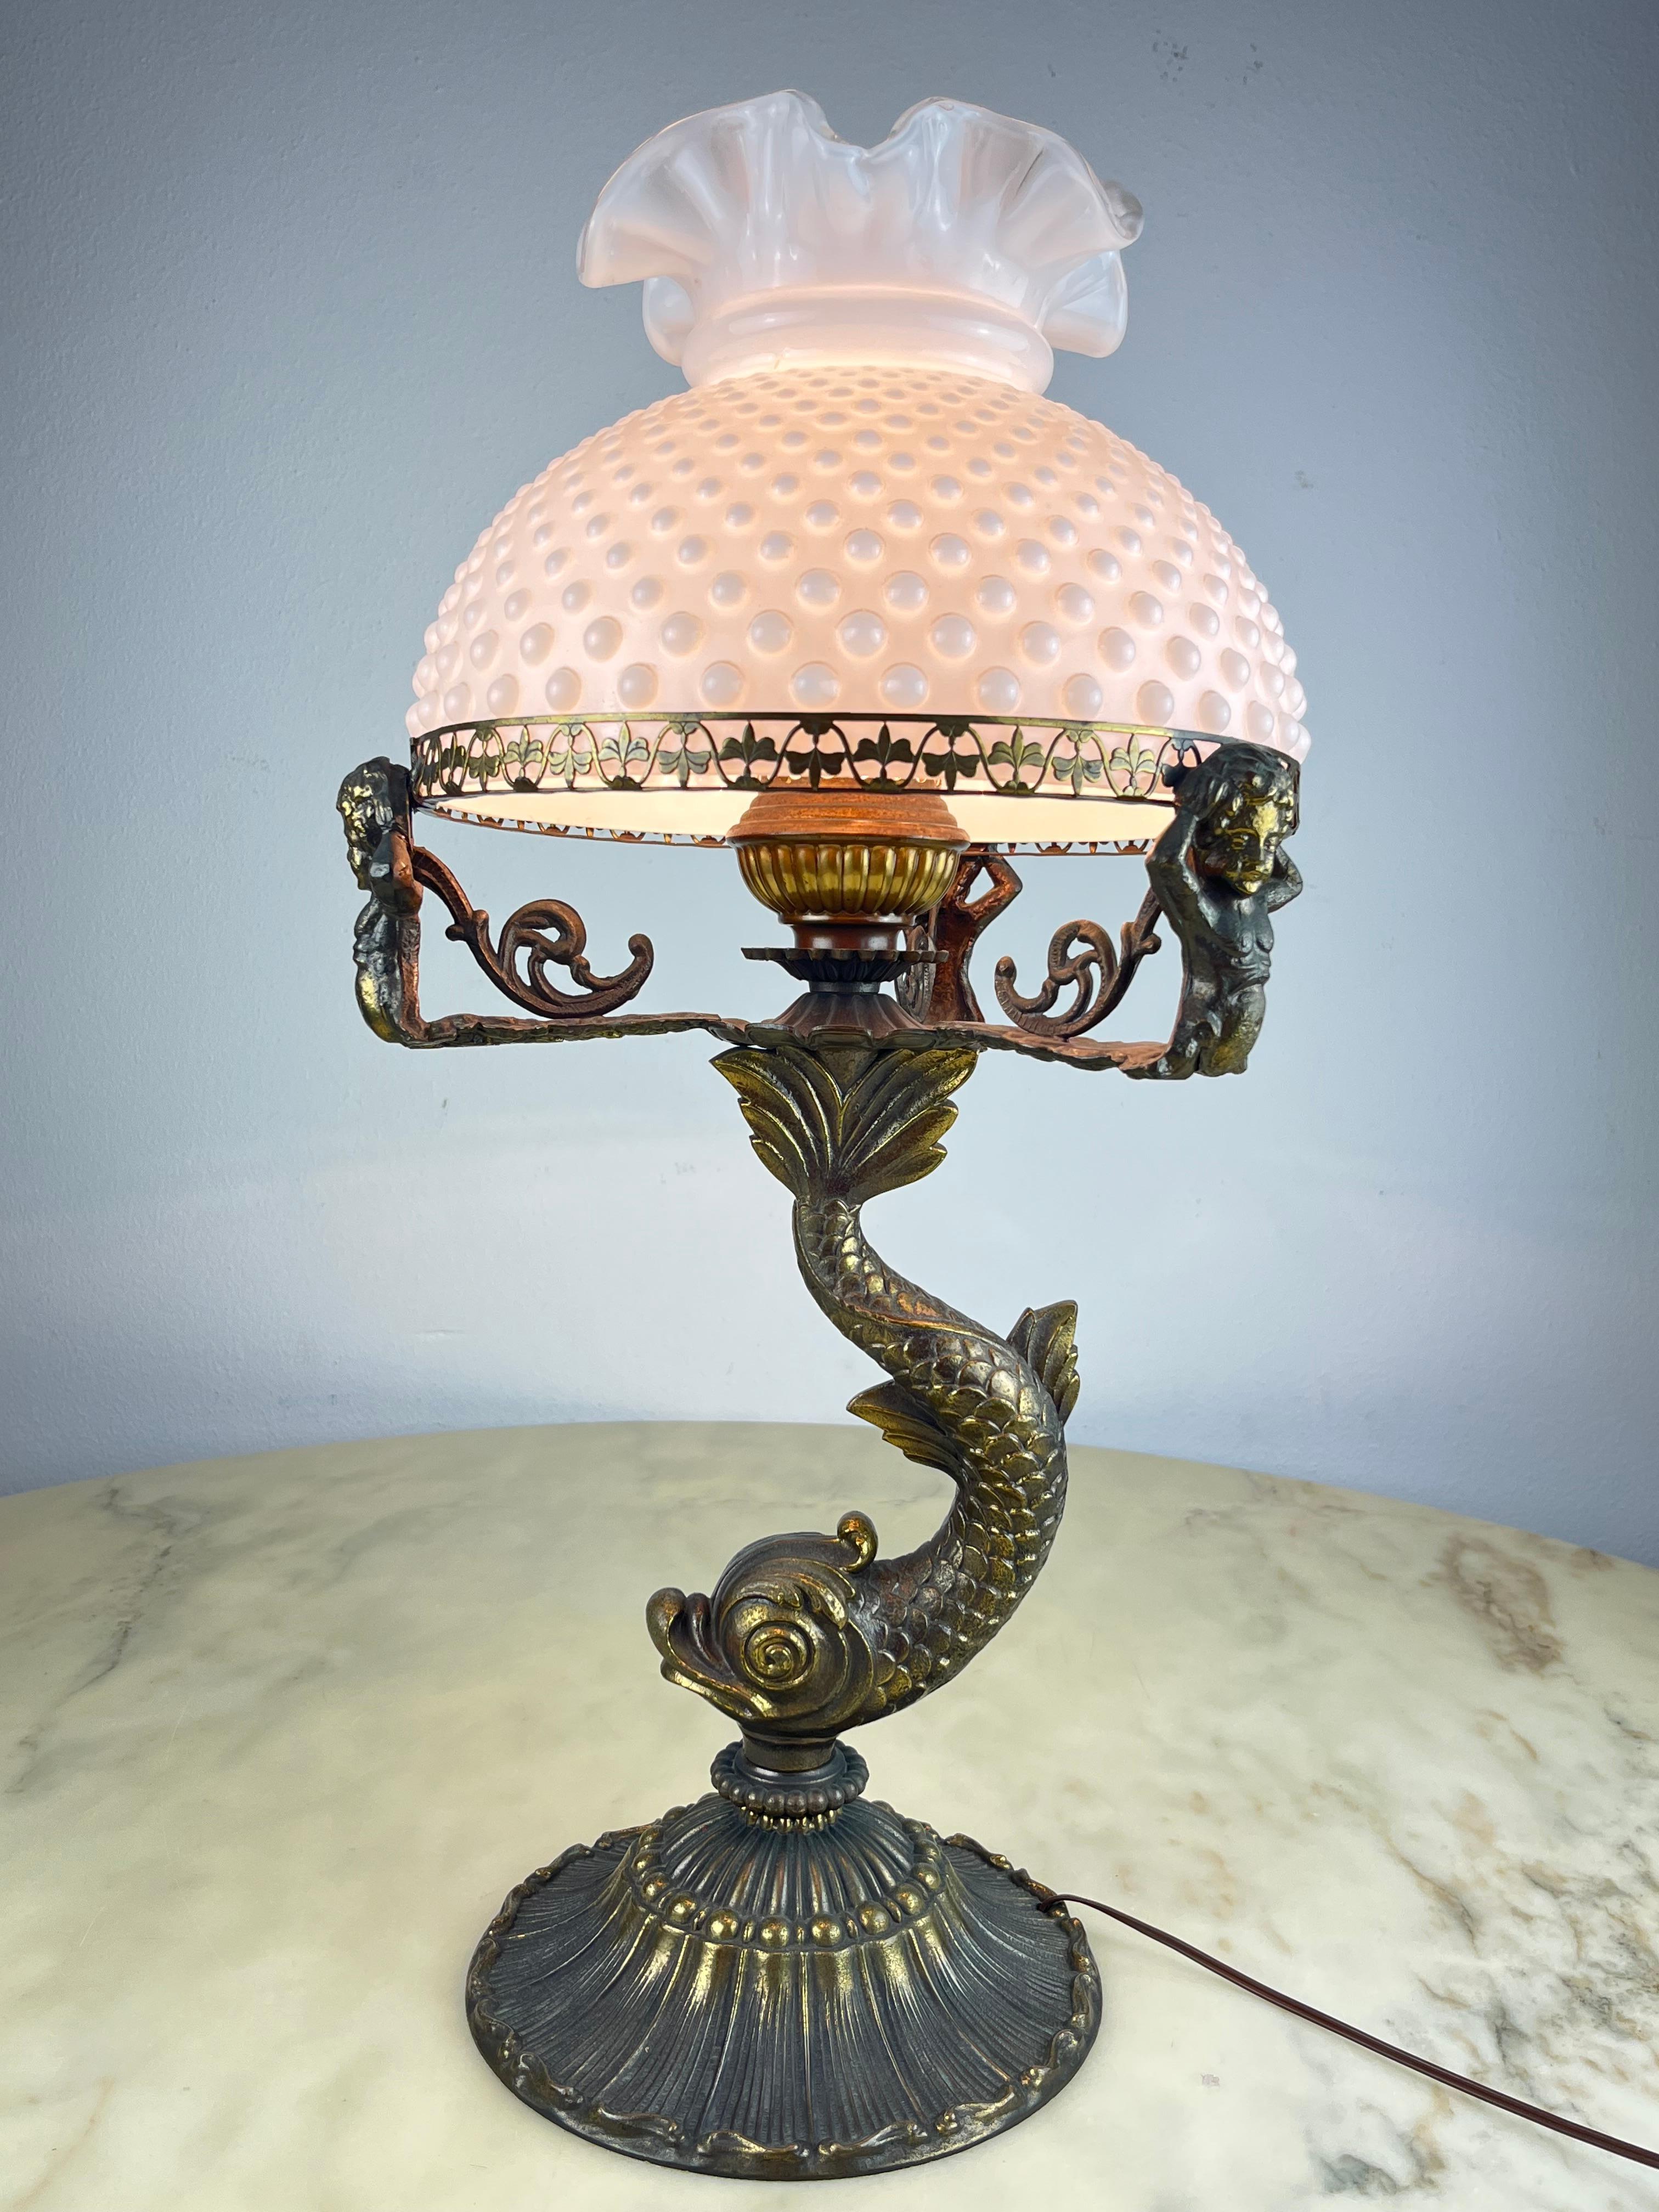 Lampe de table en bronze, Italie, années 1950
Trouvé dans une étude de notaire, il est intact et fonctionnel (lampe E27).
Bon état, avec un bol en verre laiteux.
Petits signes de vieillissement.